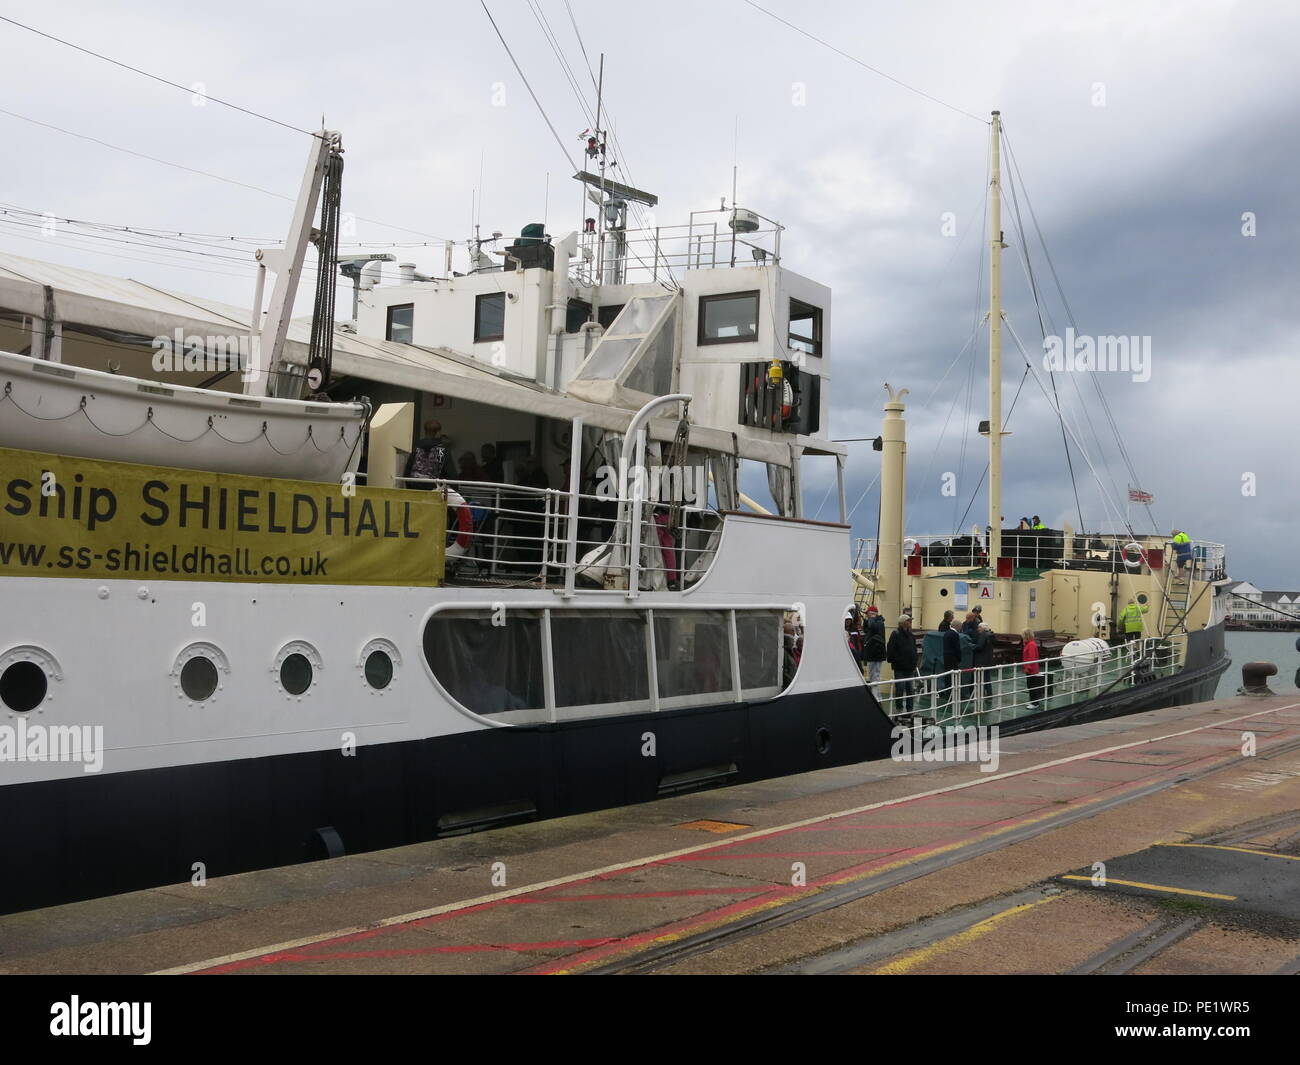 La SS Shieldhall sur un déjeuner croisière dans les eaux de Southampton, le plus grand navire à vapeur de travail en Grande-Bretagne, préservé de l'exploitation sur la Clyde. Banque D'Images